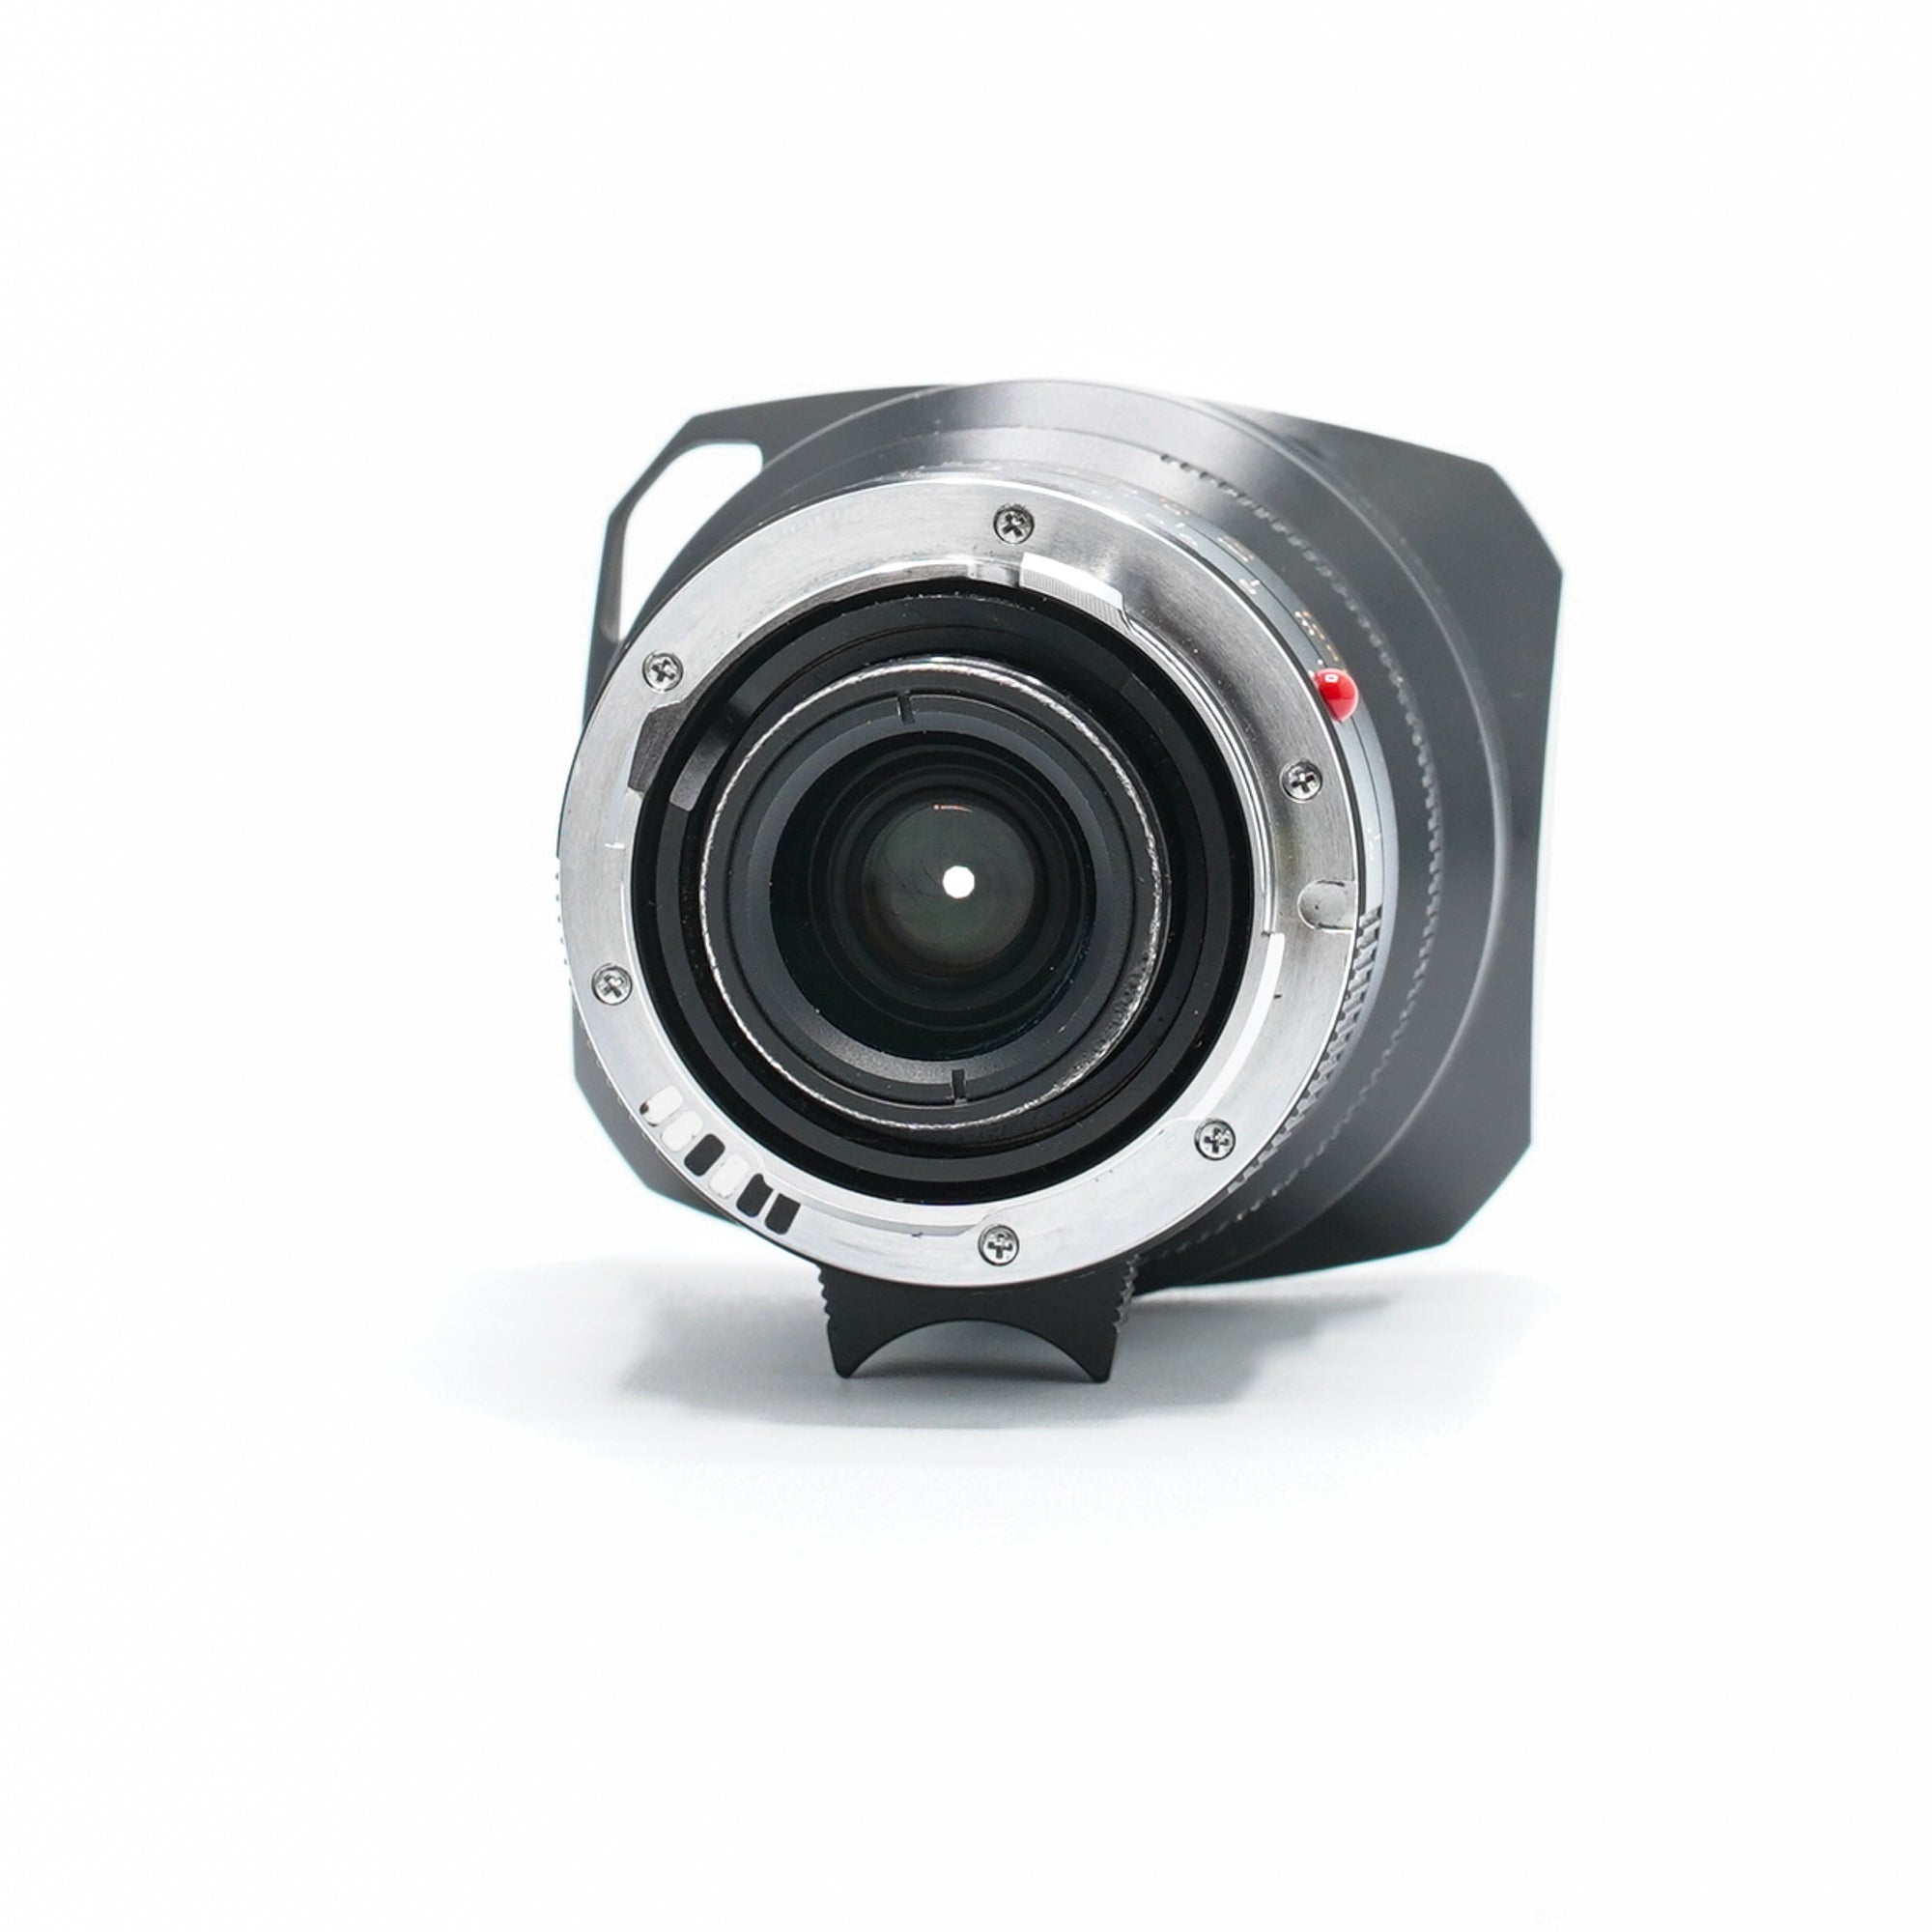 Leica Super-Elmar-M 18mm F3.8 ASPH. schwarz